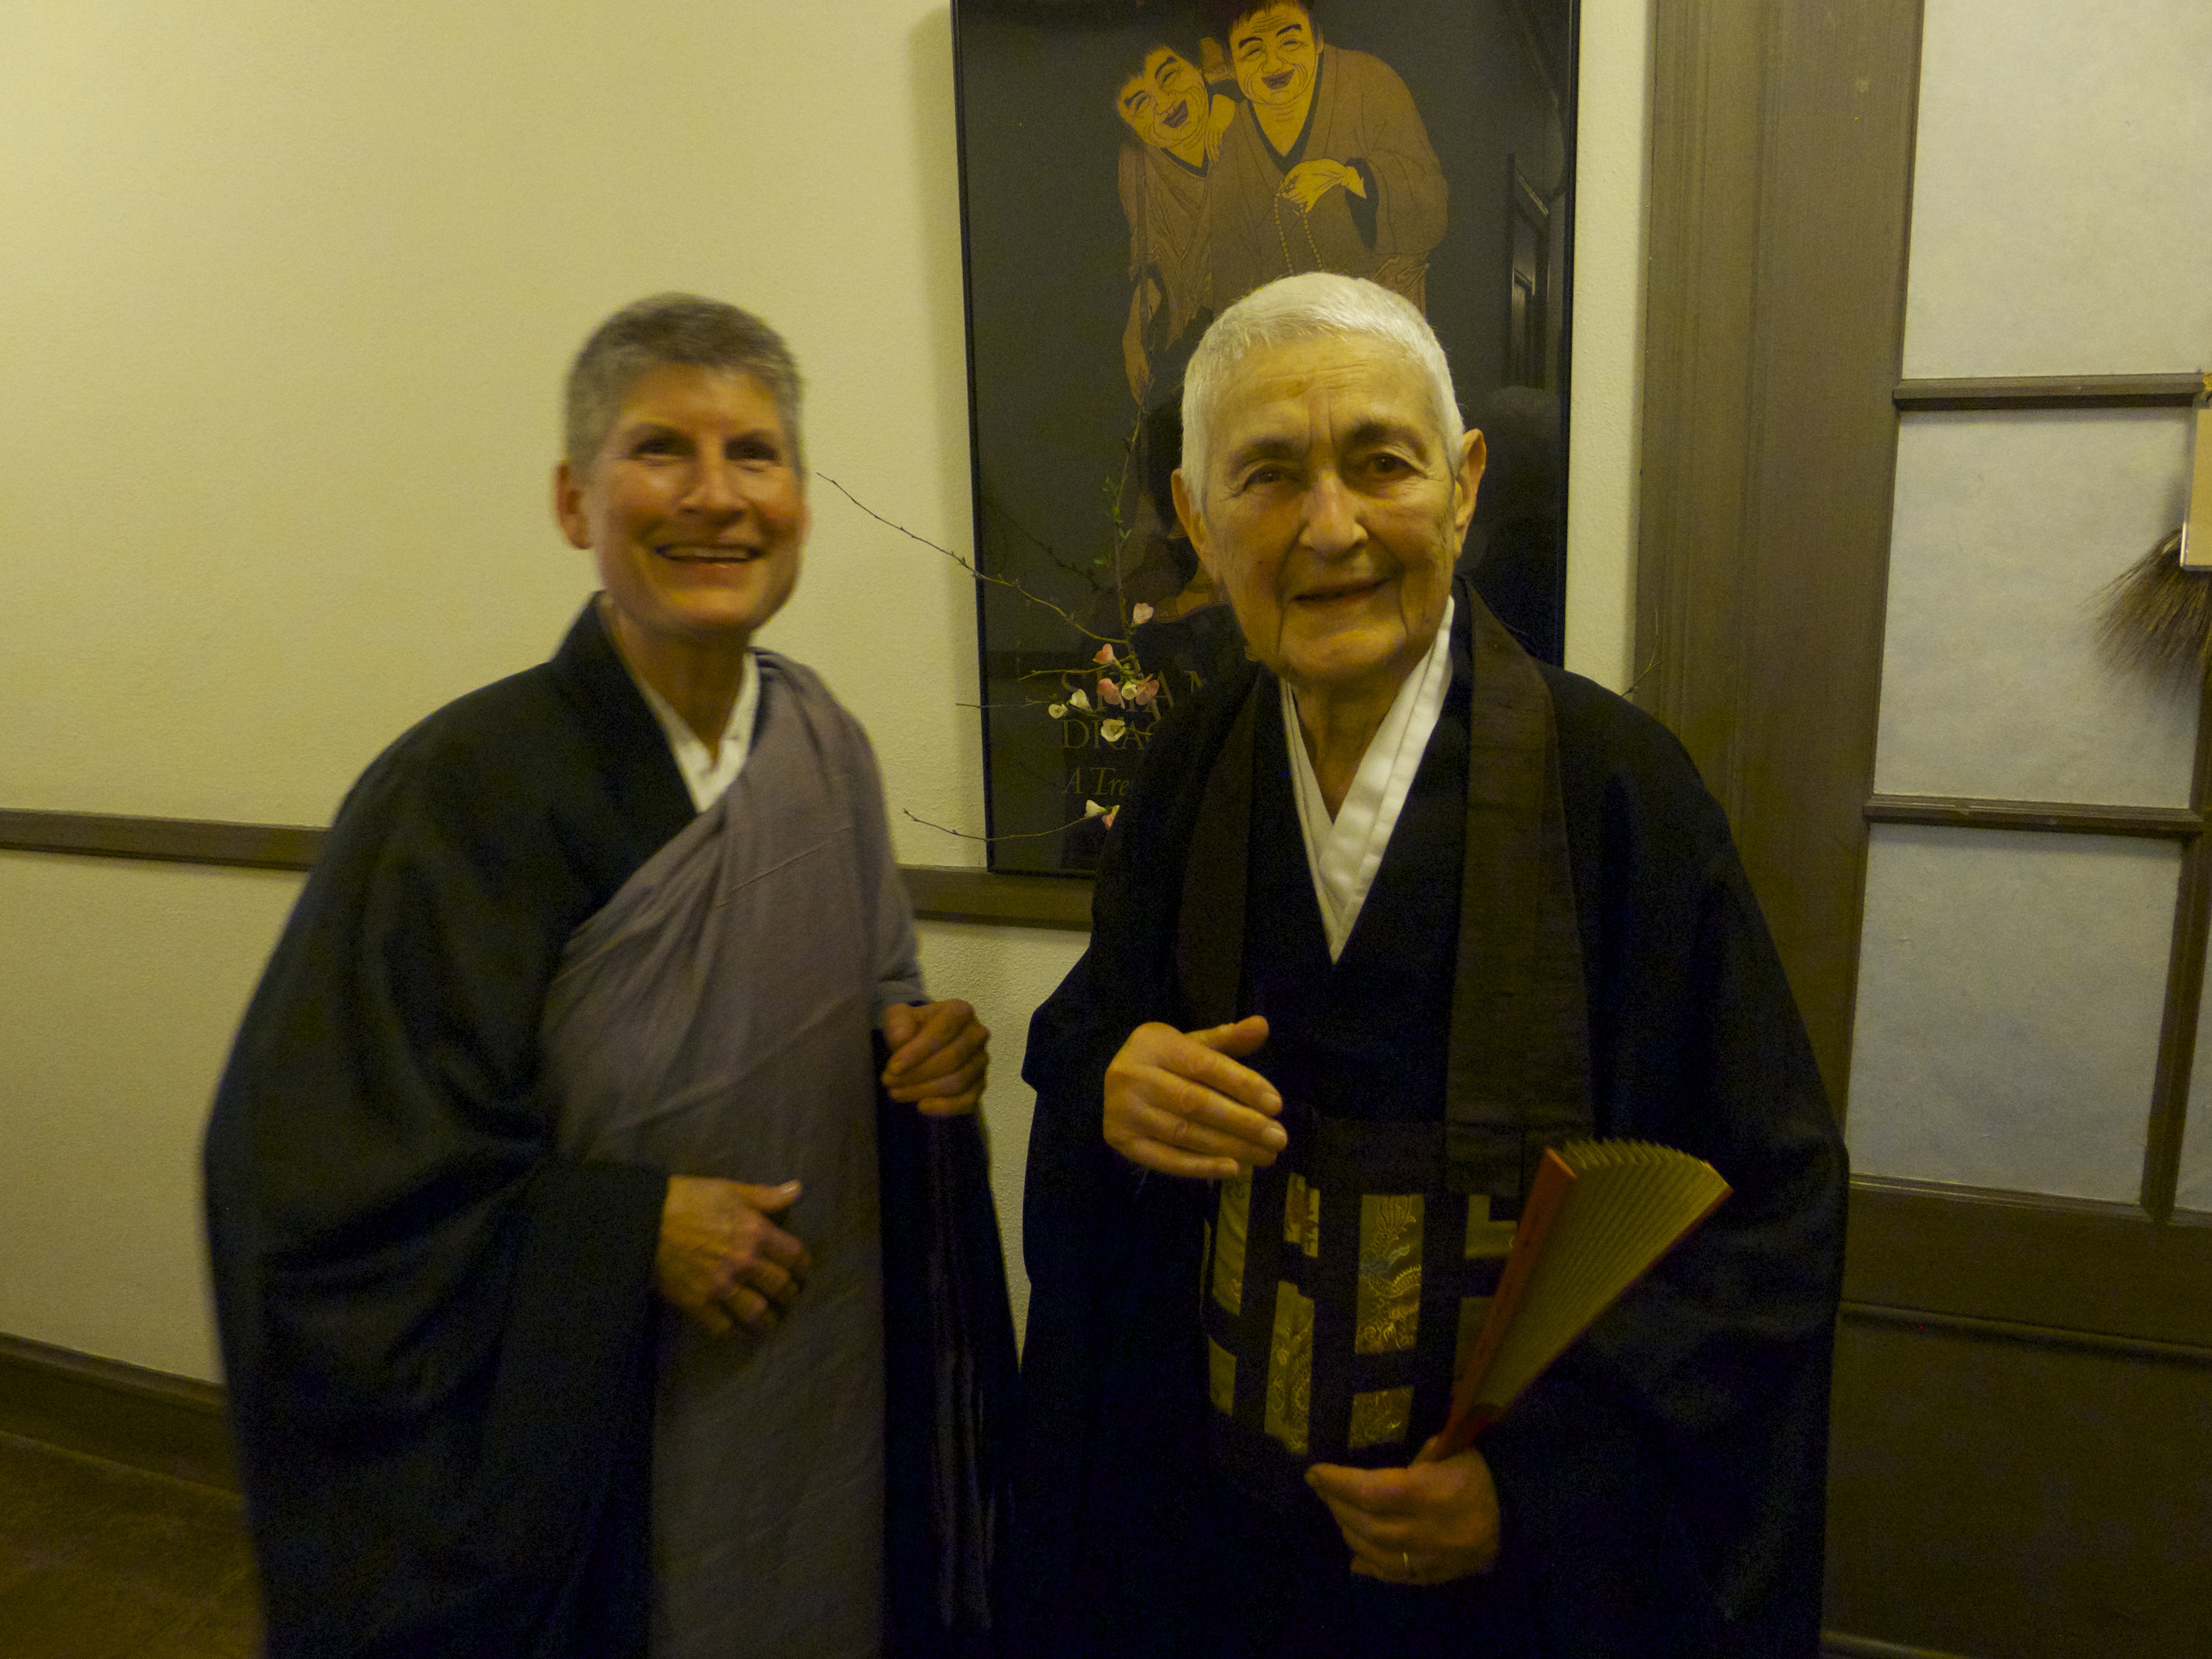 Misha Merrill and Zenkei, March 2015